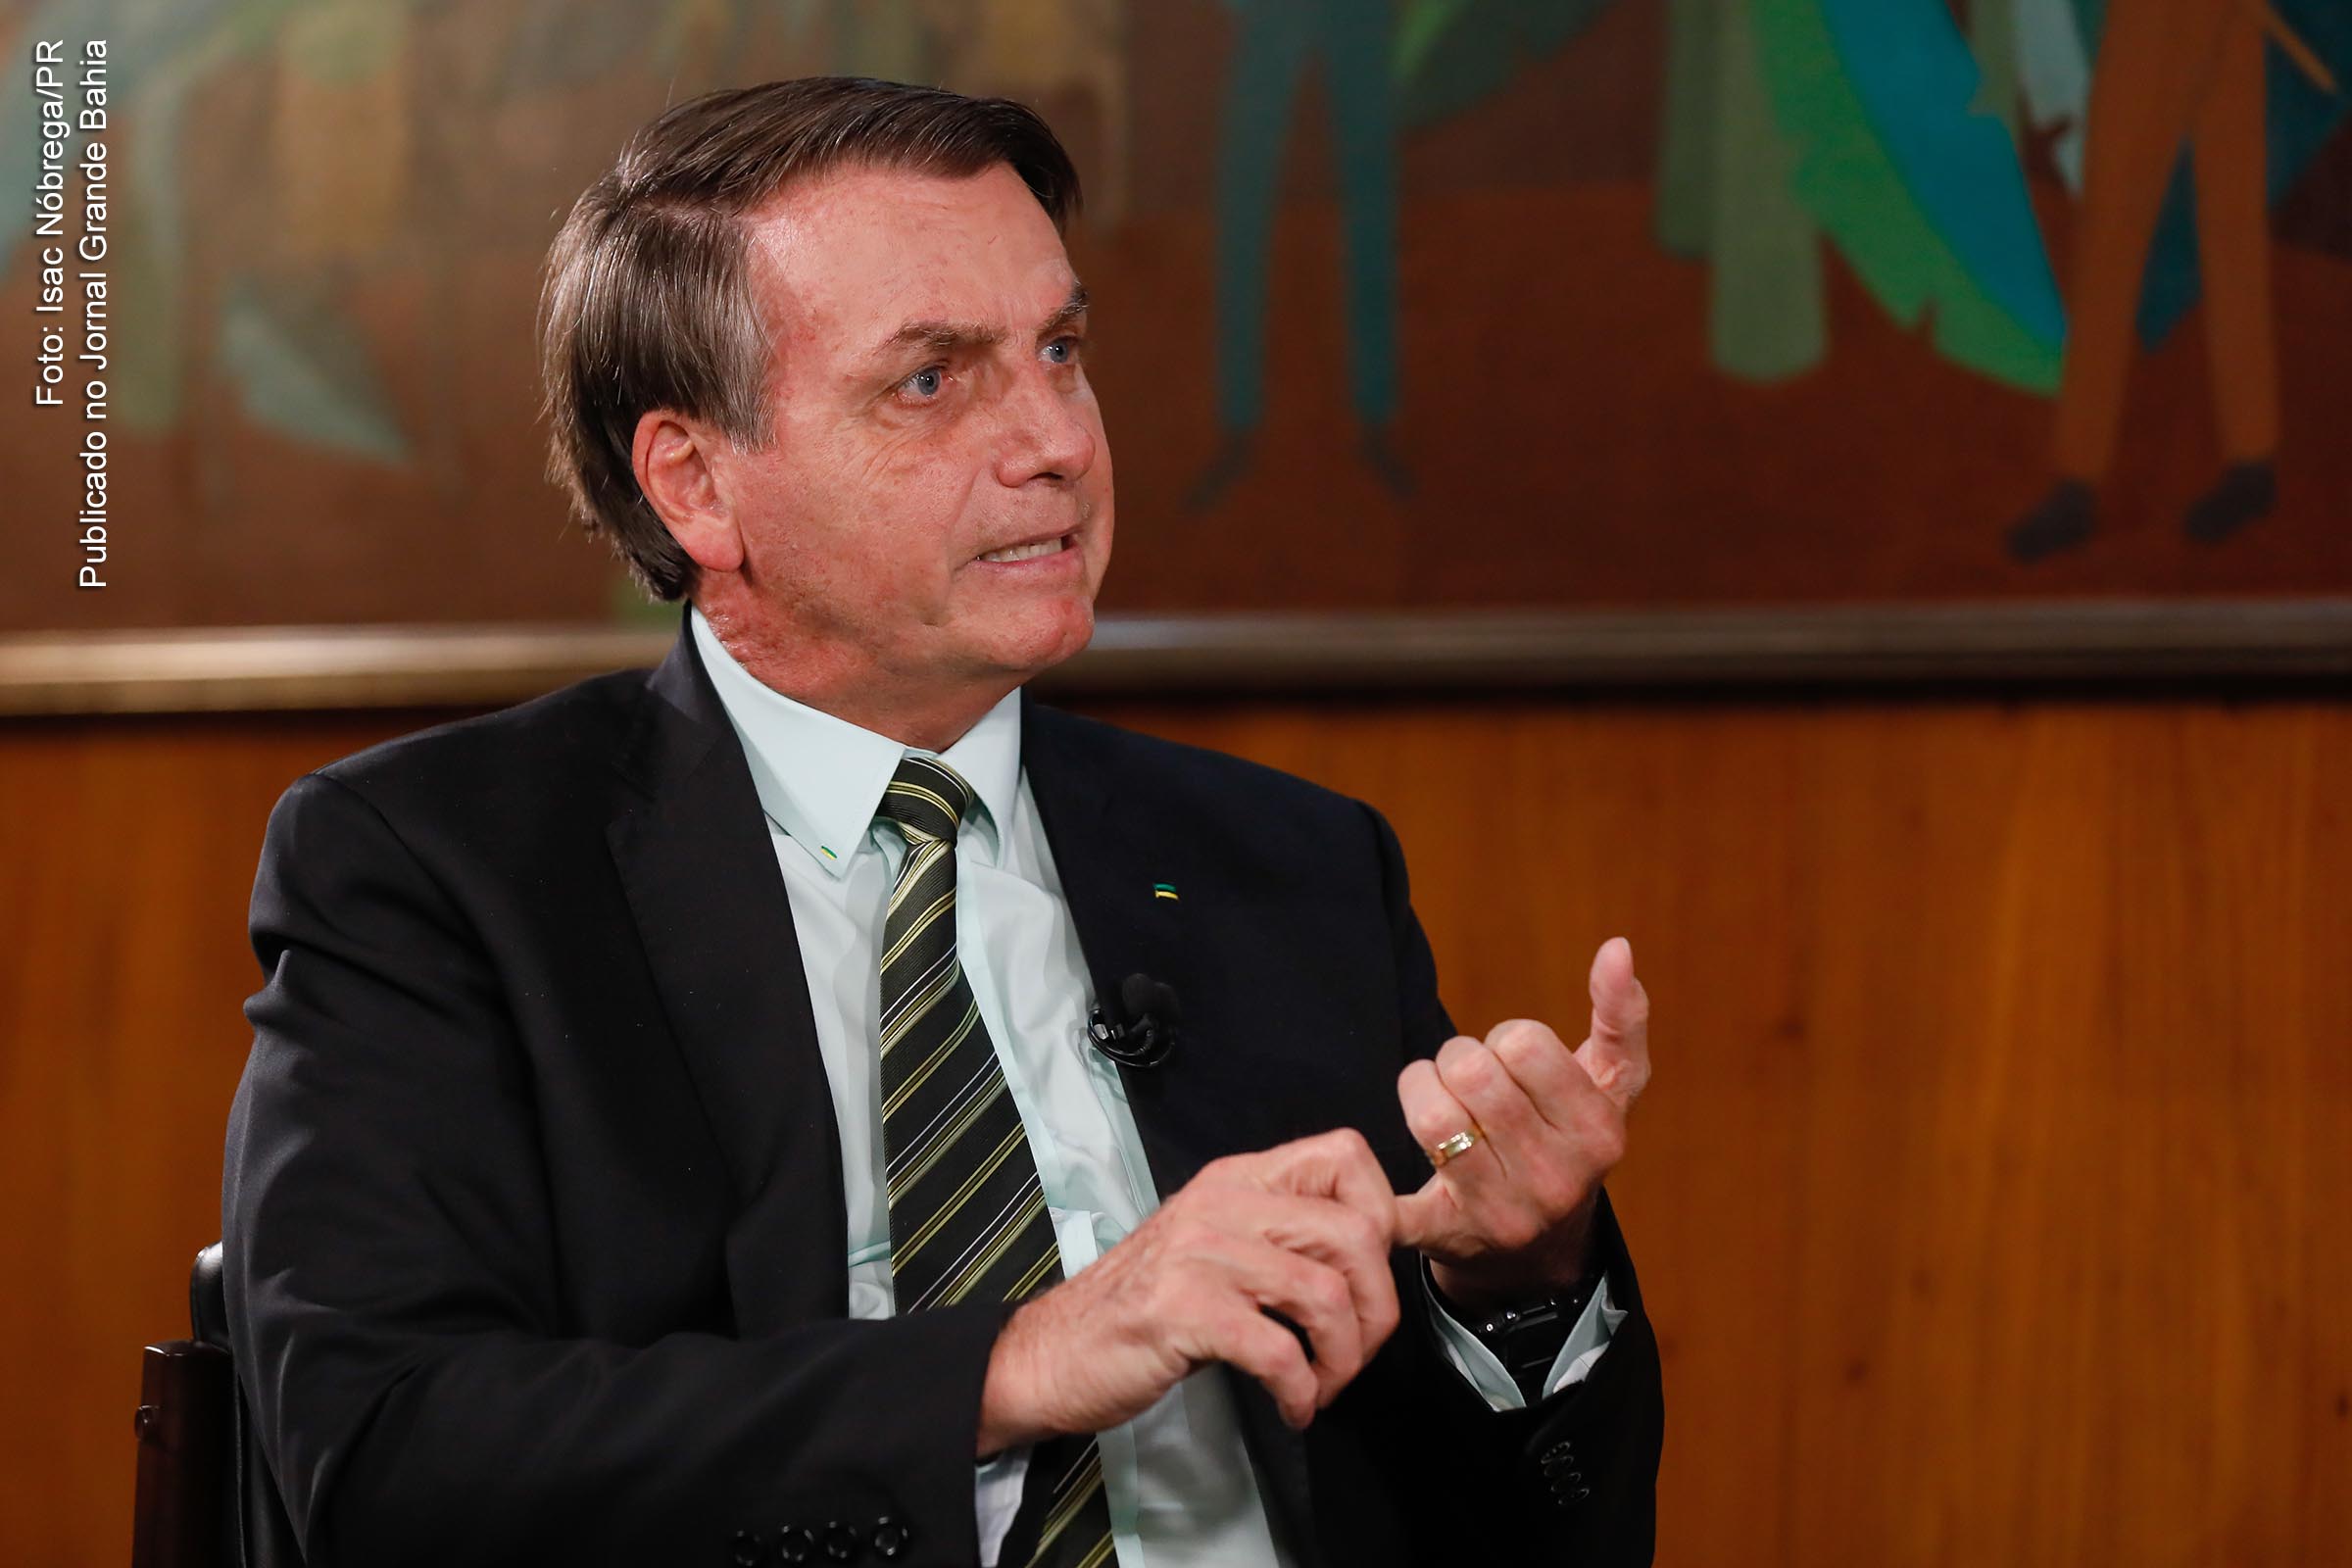 Extremista de direita Jair Bolsonaro, governante tirano e inepto é contra o isolamento social.